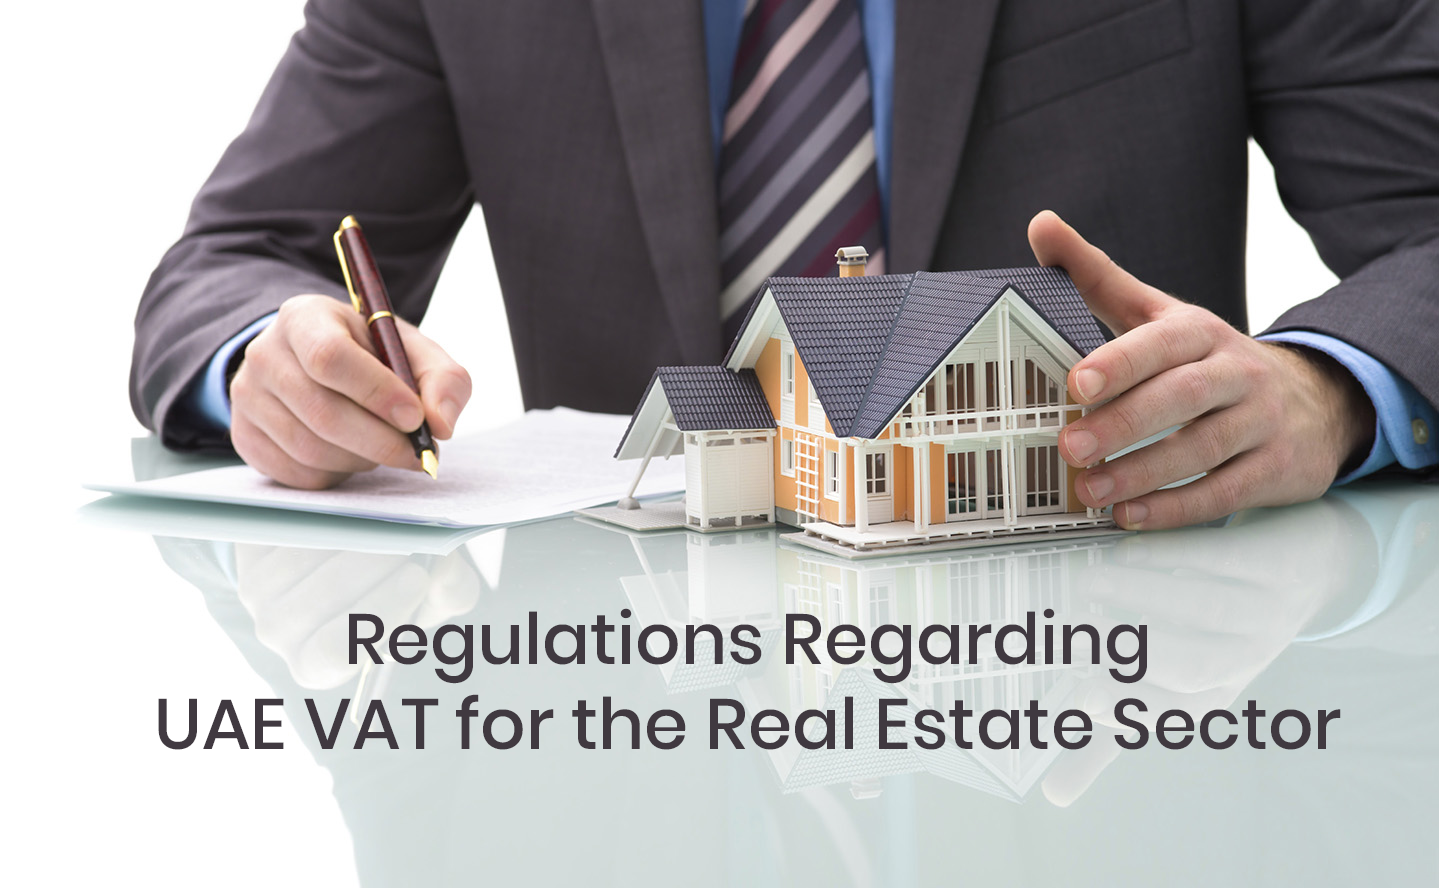 UAE VAT for Real Estate Sector